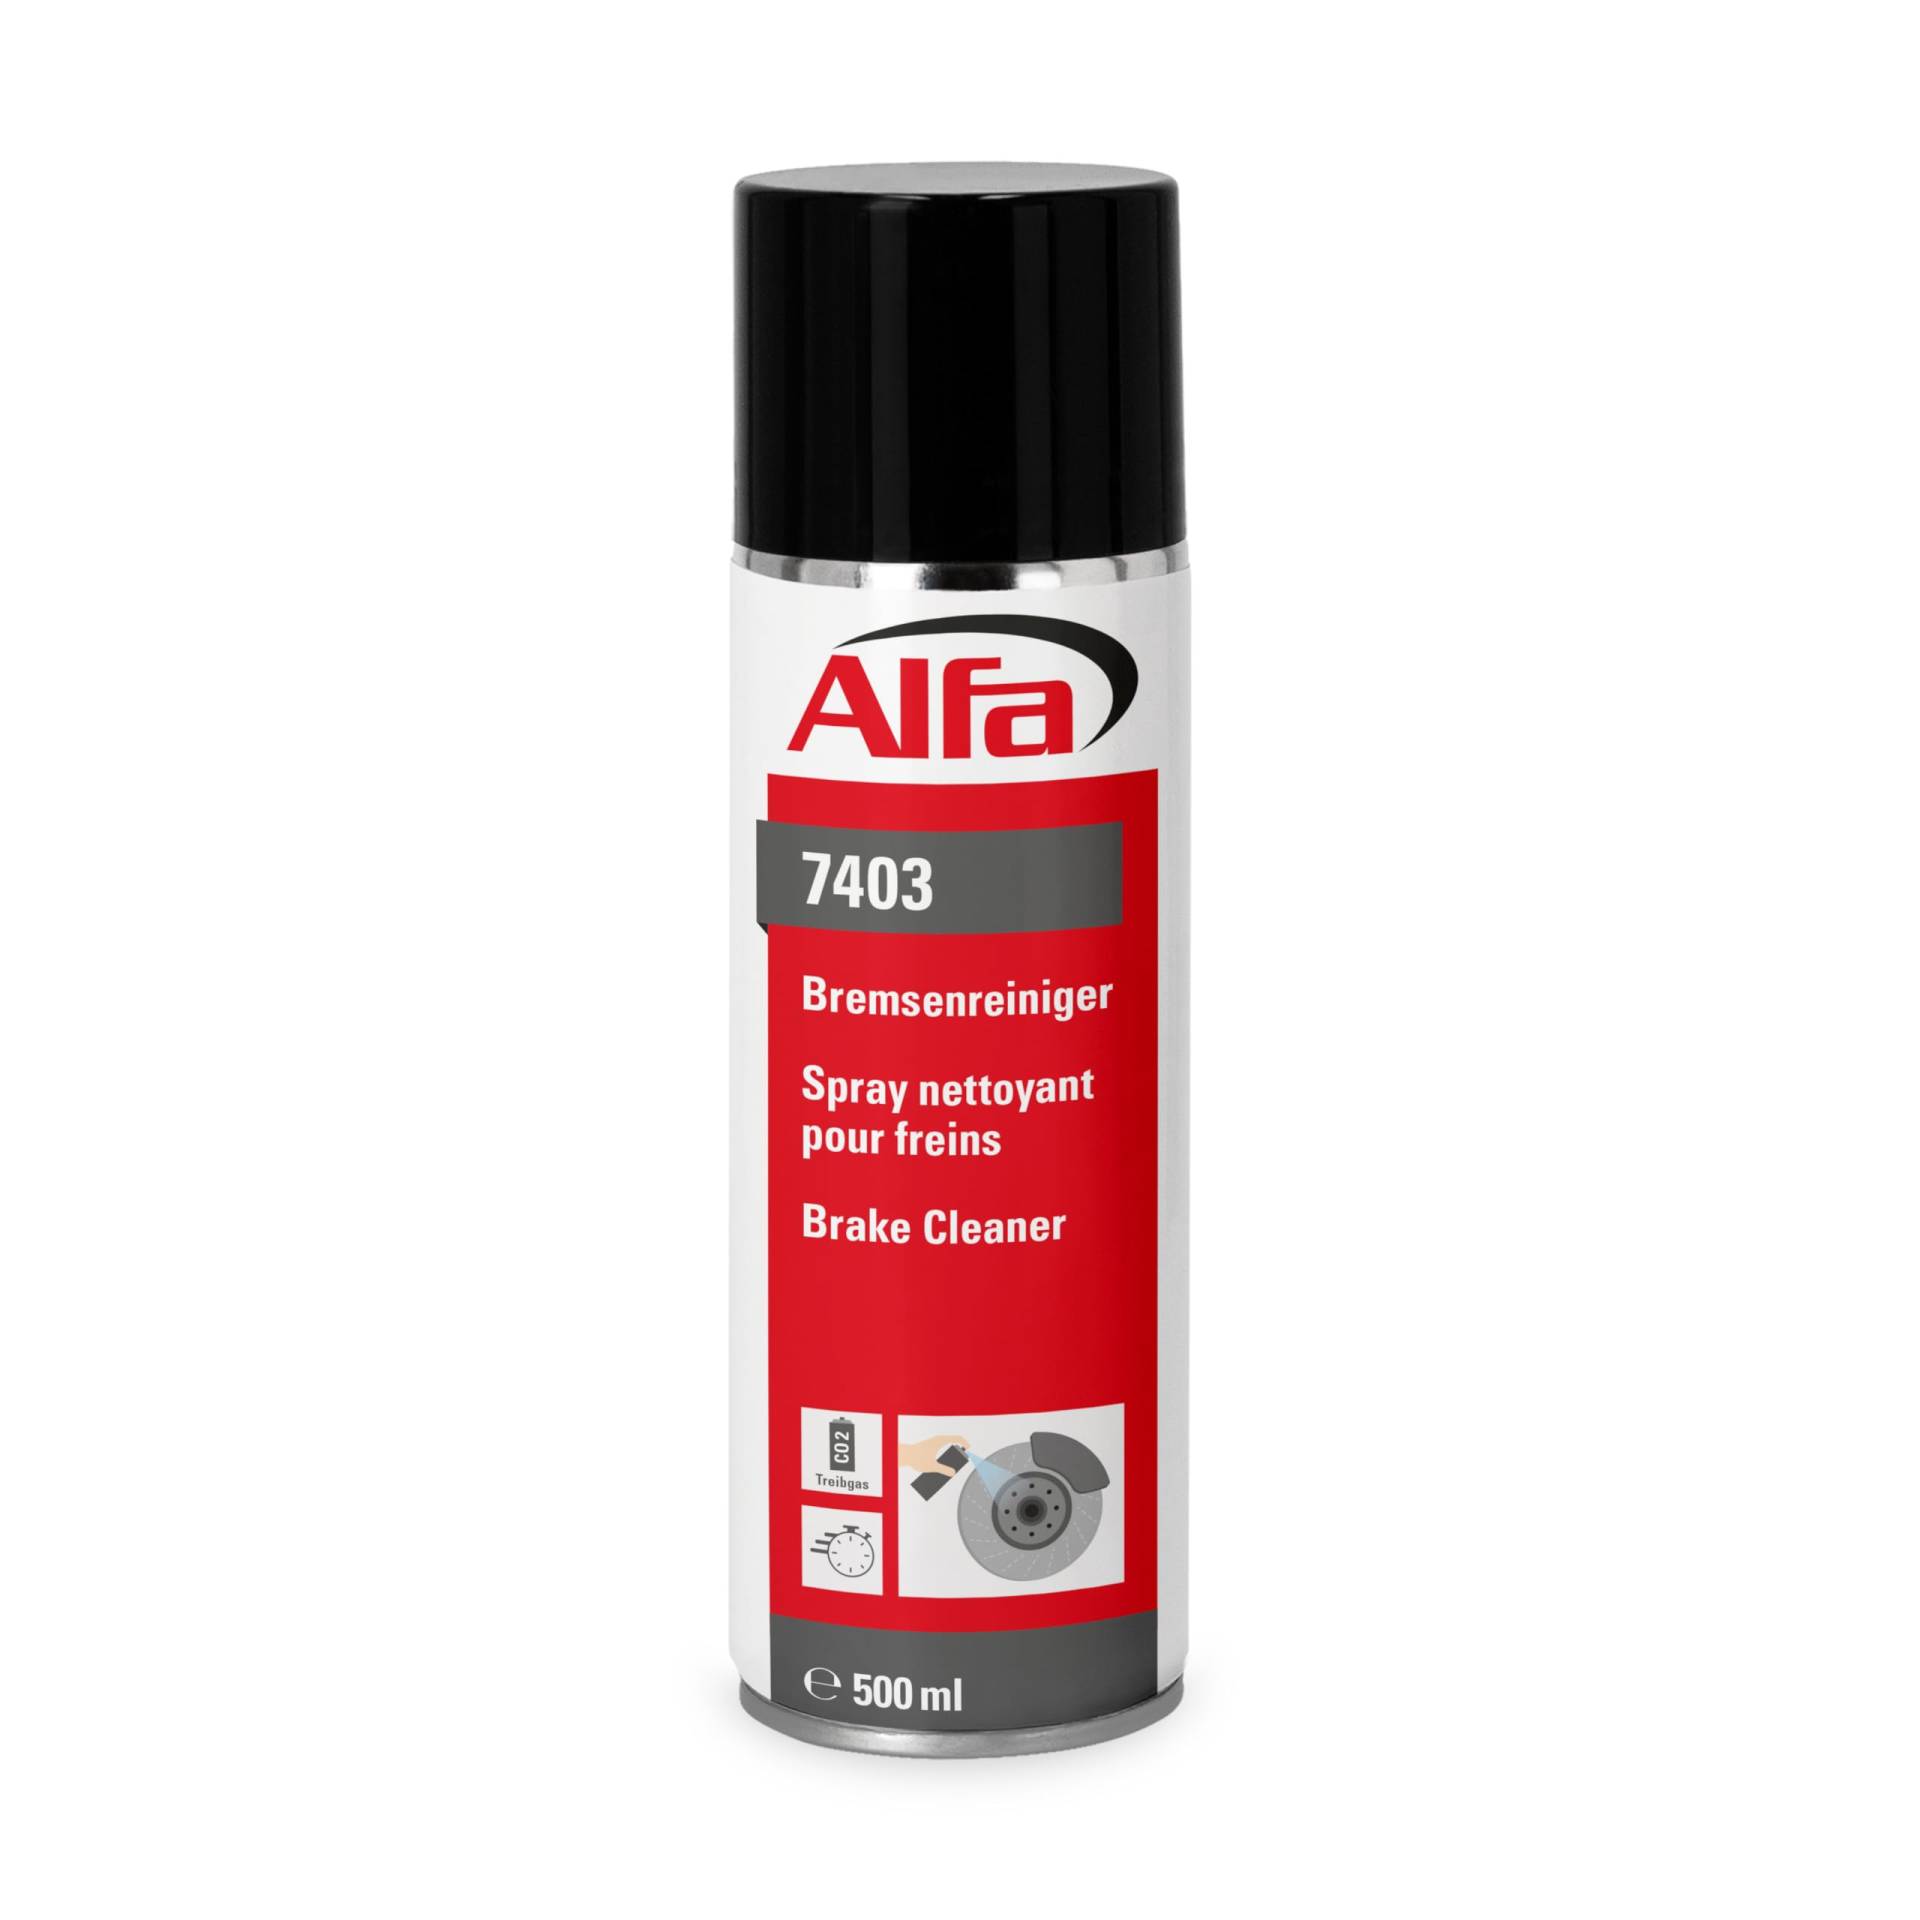 Alfa Bremsenreiniger 500 ml Profi-Qualität Premium-Reiniger Bremsen Spray kraftvoll rückstandsfrei gegen Öle Fette Harze - Made in Germany von Alfa